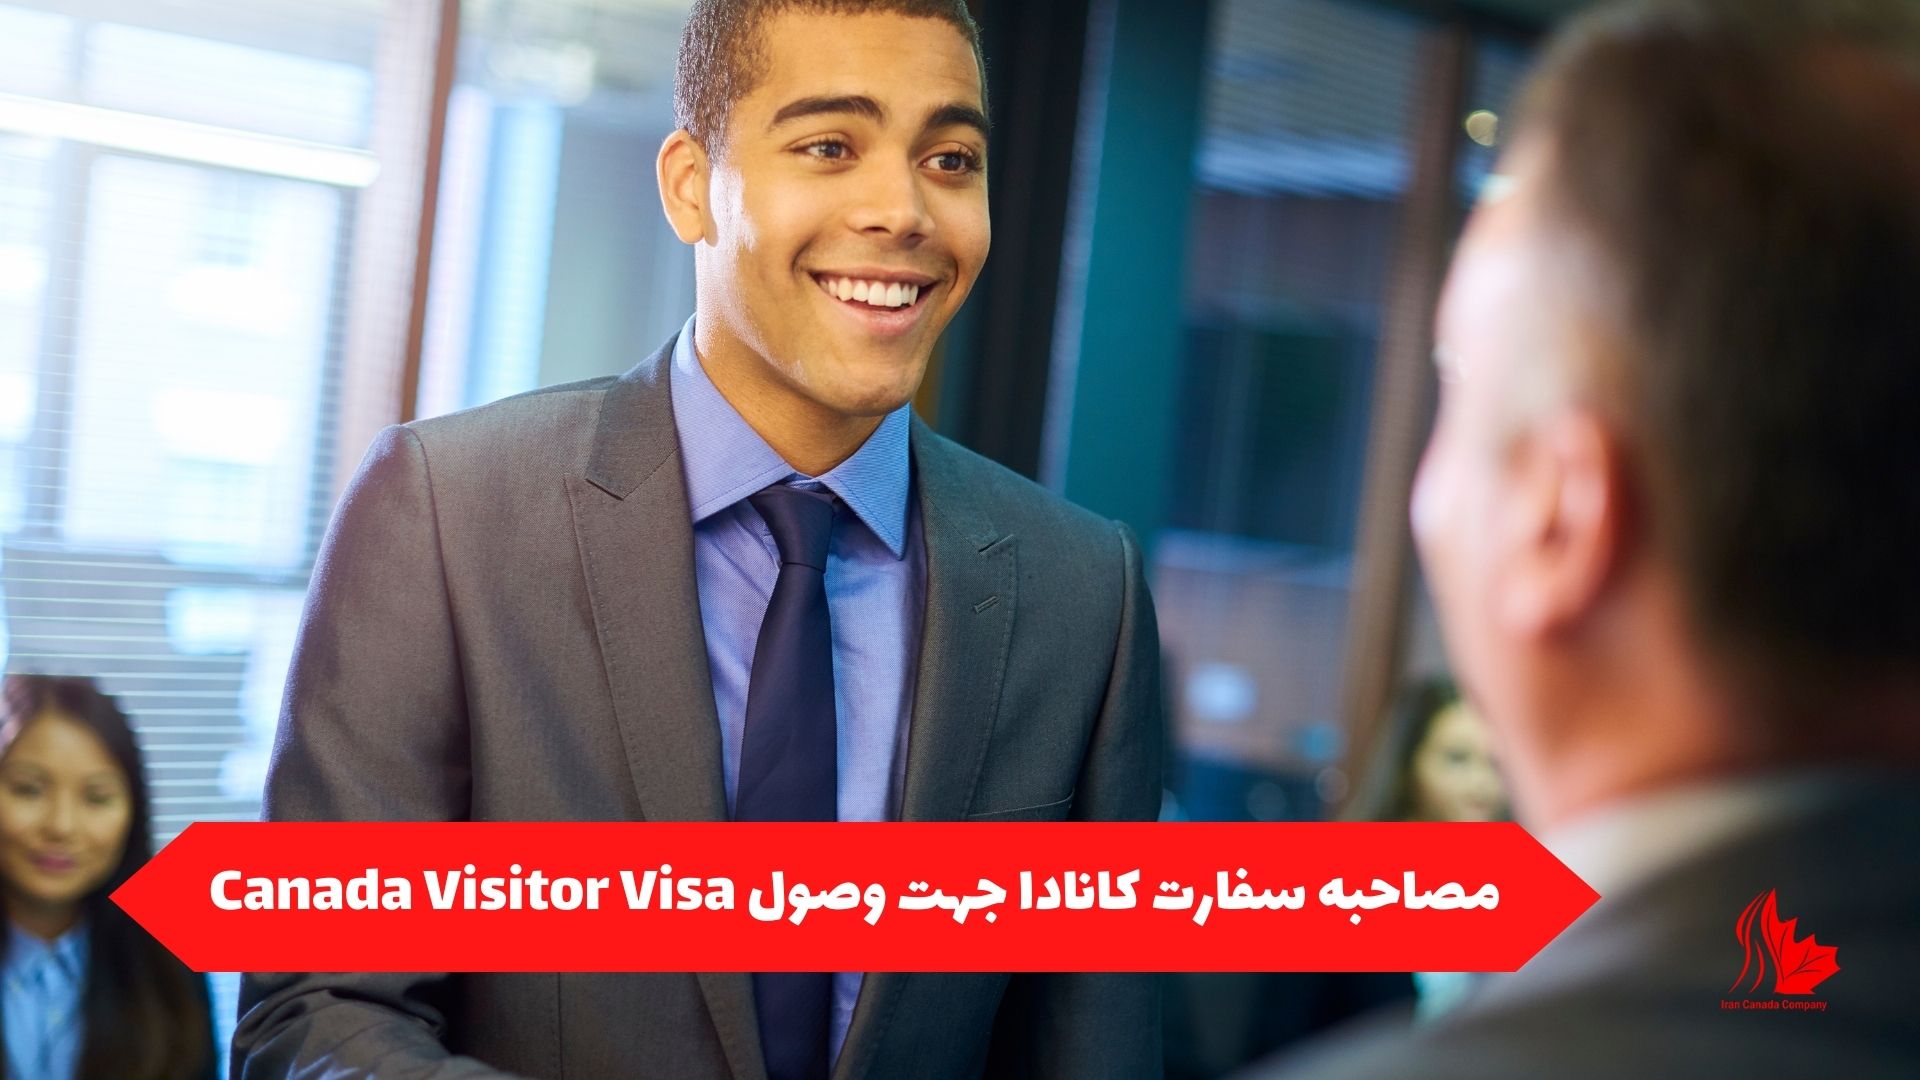 مصاحبه سفارت کانادا برای وصول Canada Visitor Visa